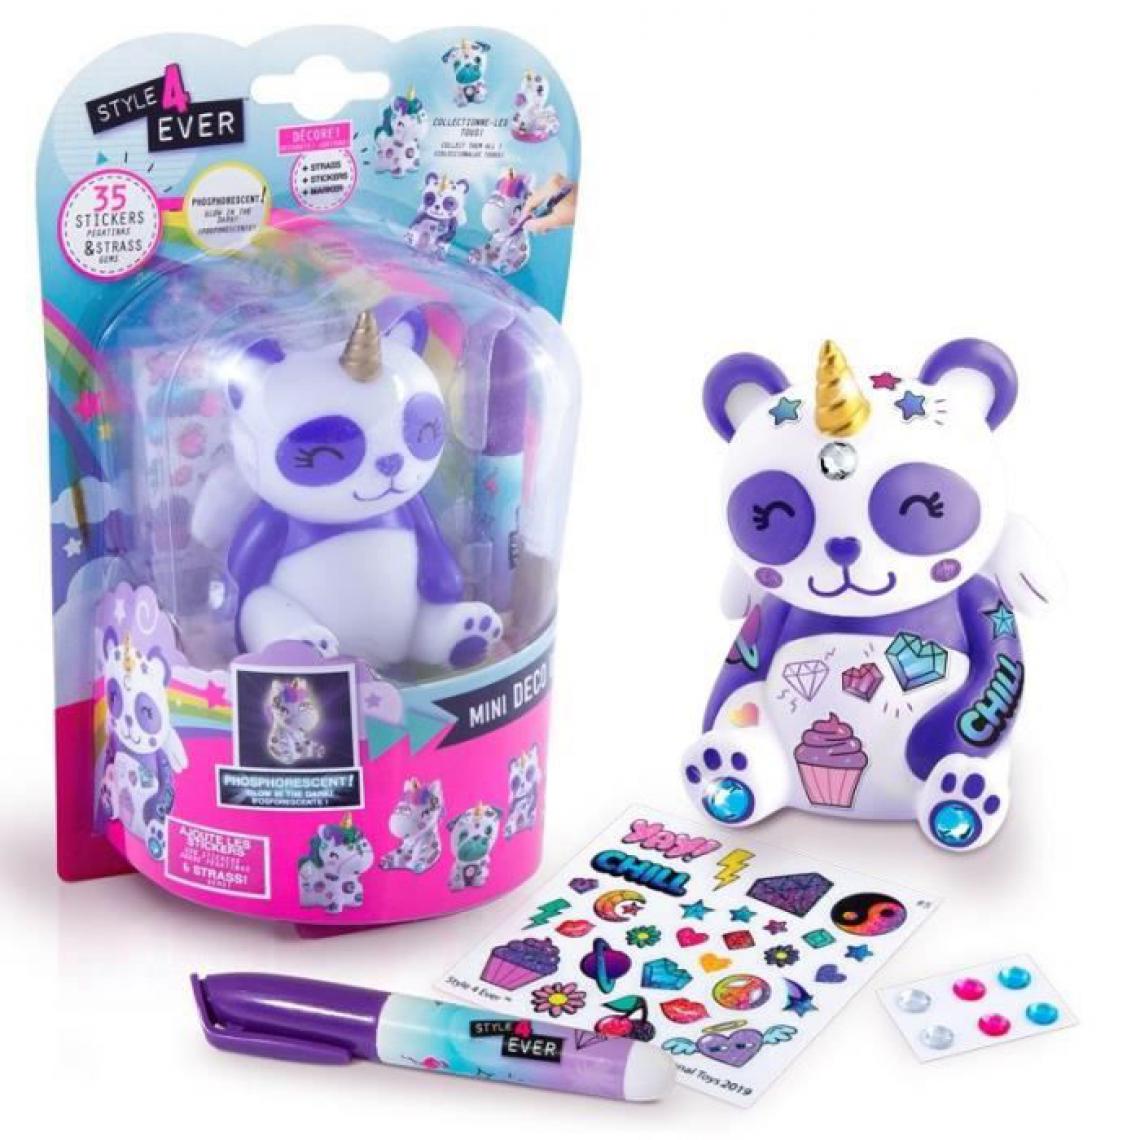 Canal Toys - STYLE 4 EVER Mini Deco DIY - Mini personnage Panda phosphorescent a décorer et collectionner - OFG 193 - 6 ans et + - Jeux éducatifs